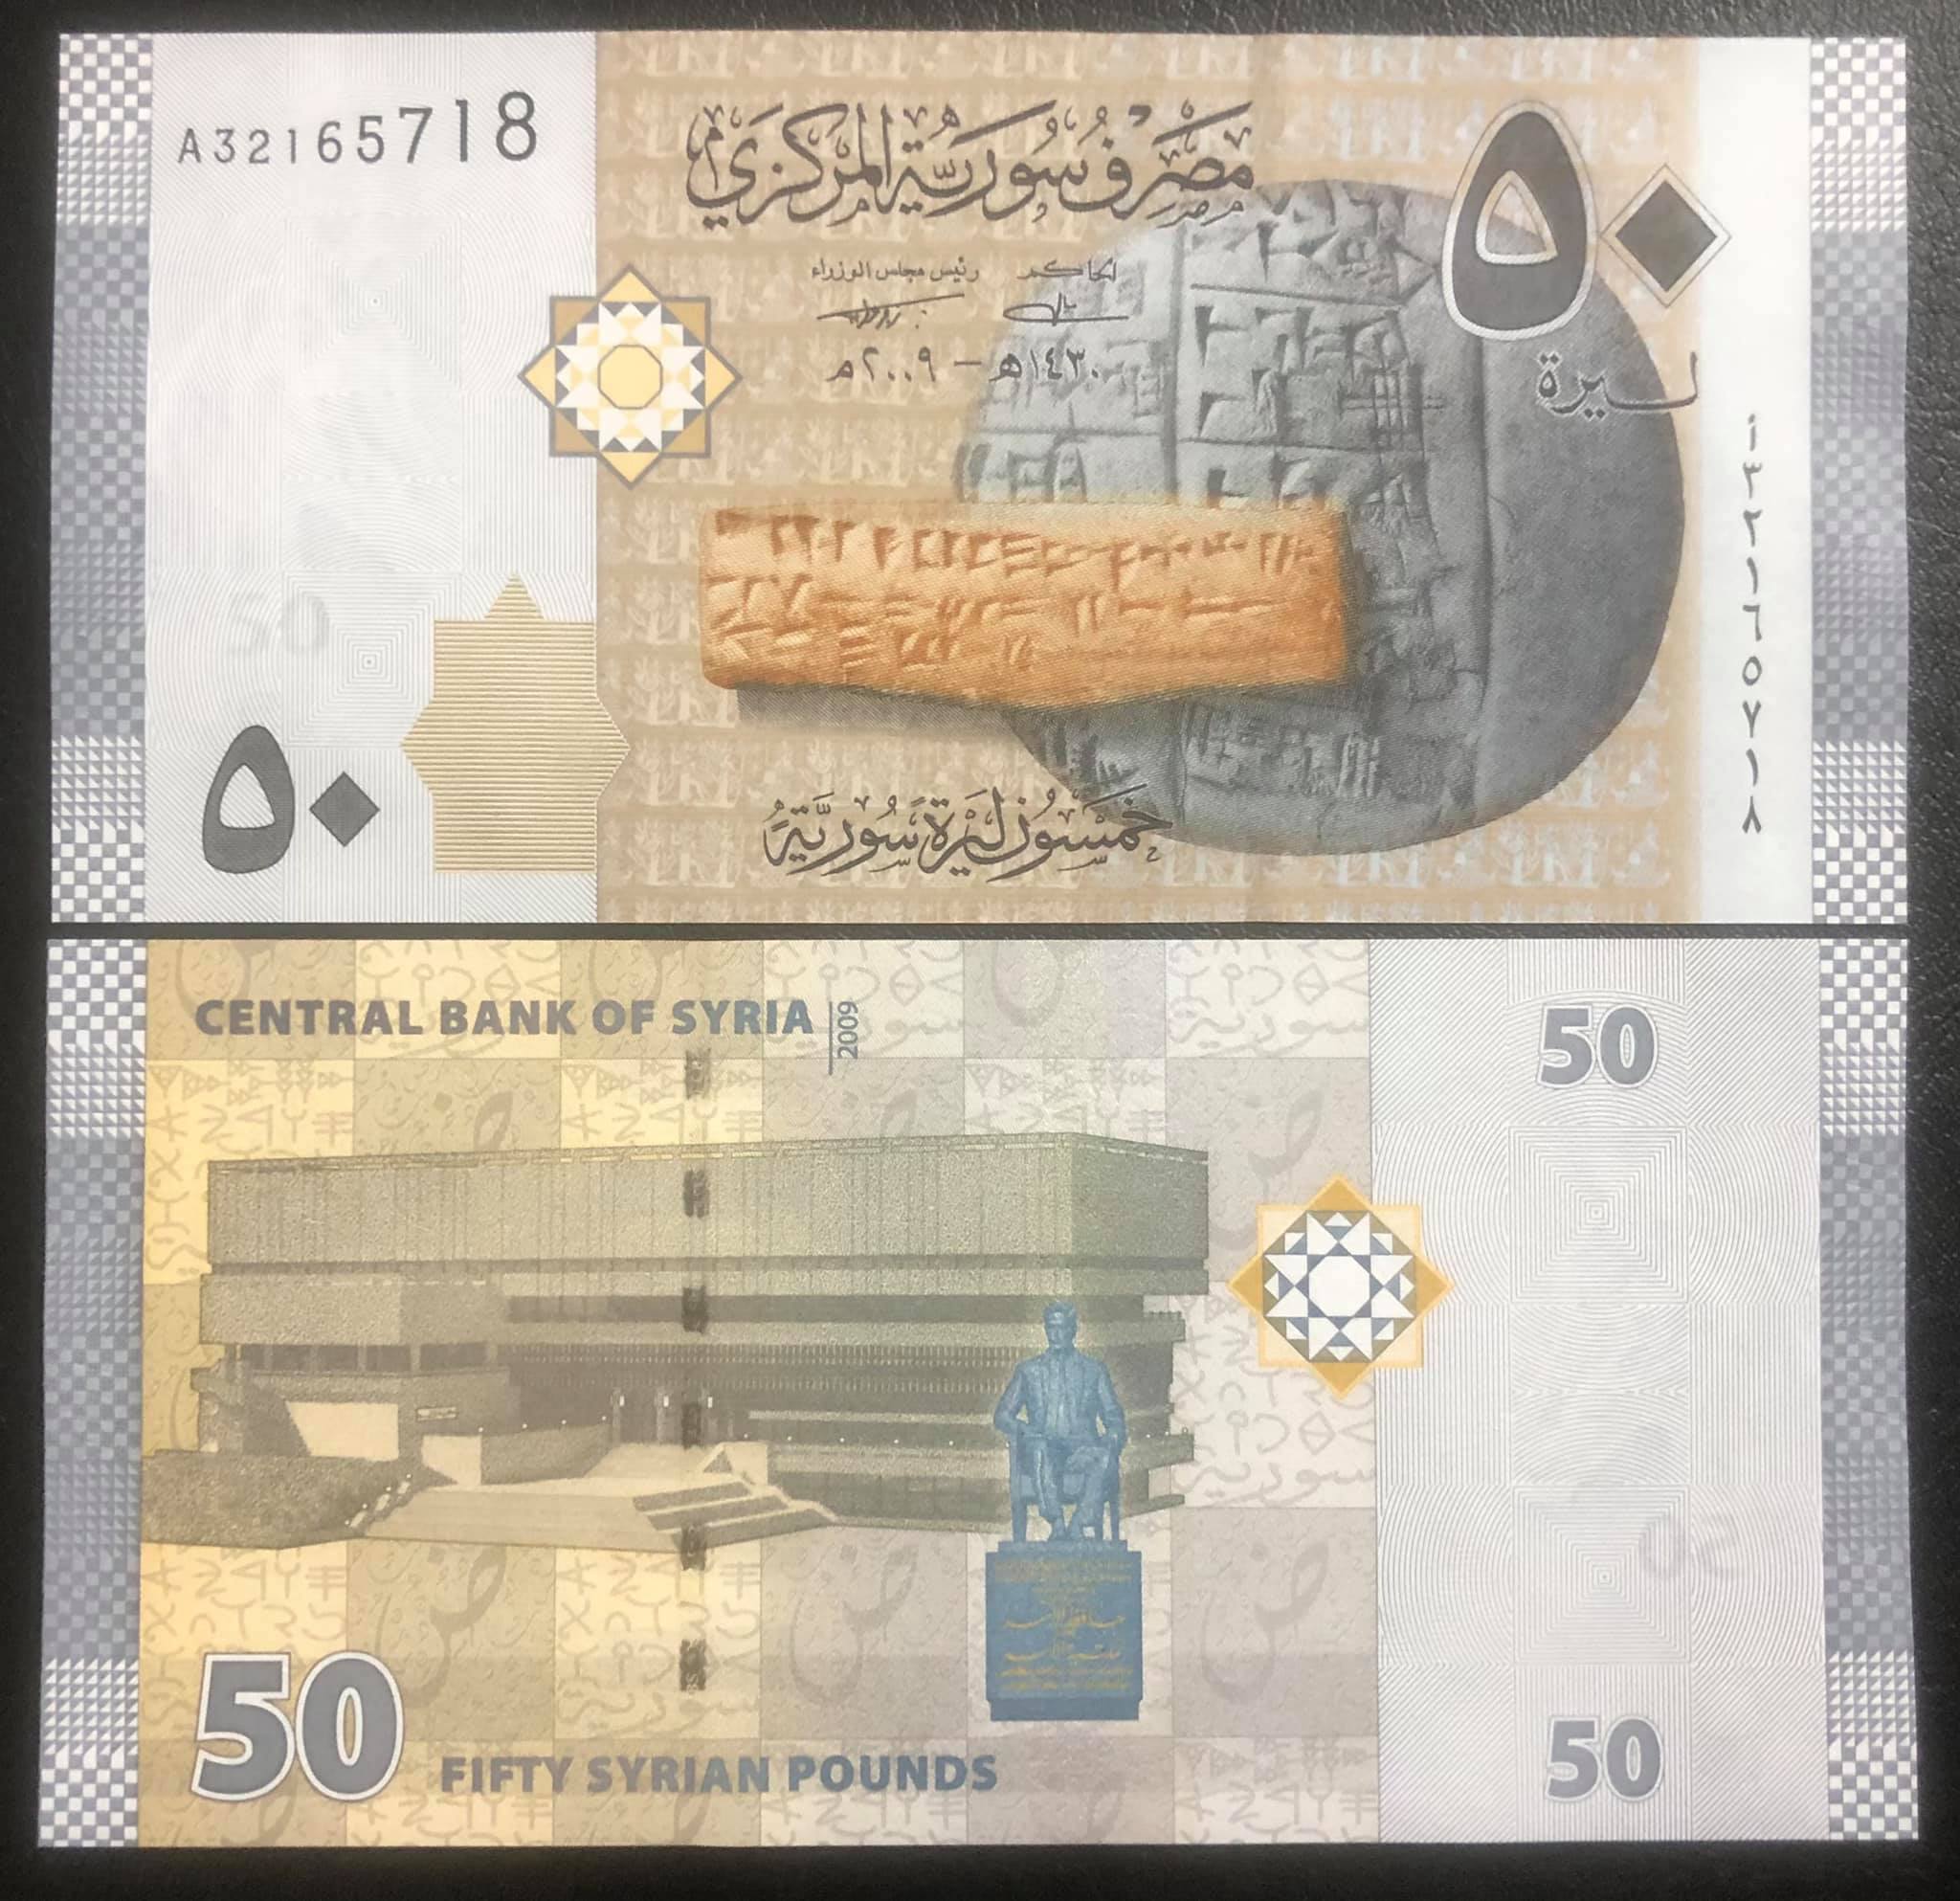 Tờ 50 bảng Syria, tiền của quốc gia Trung Đông sưu tầm